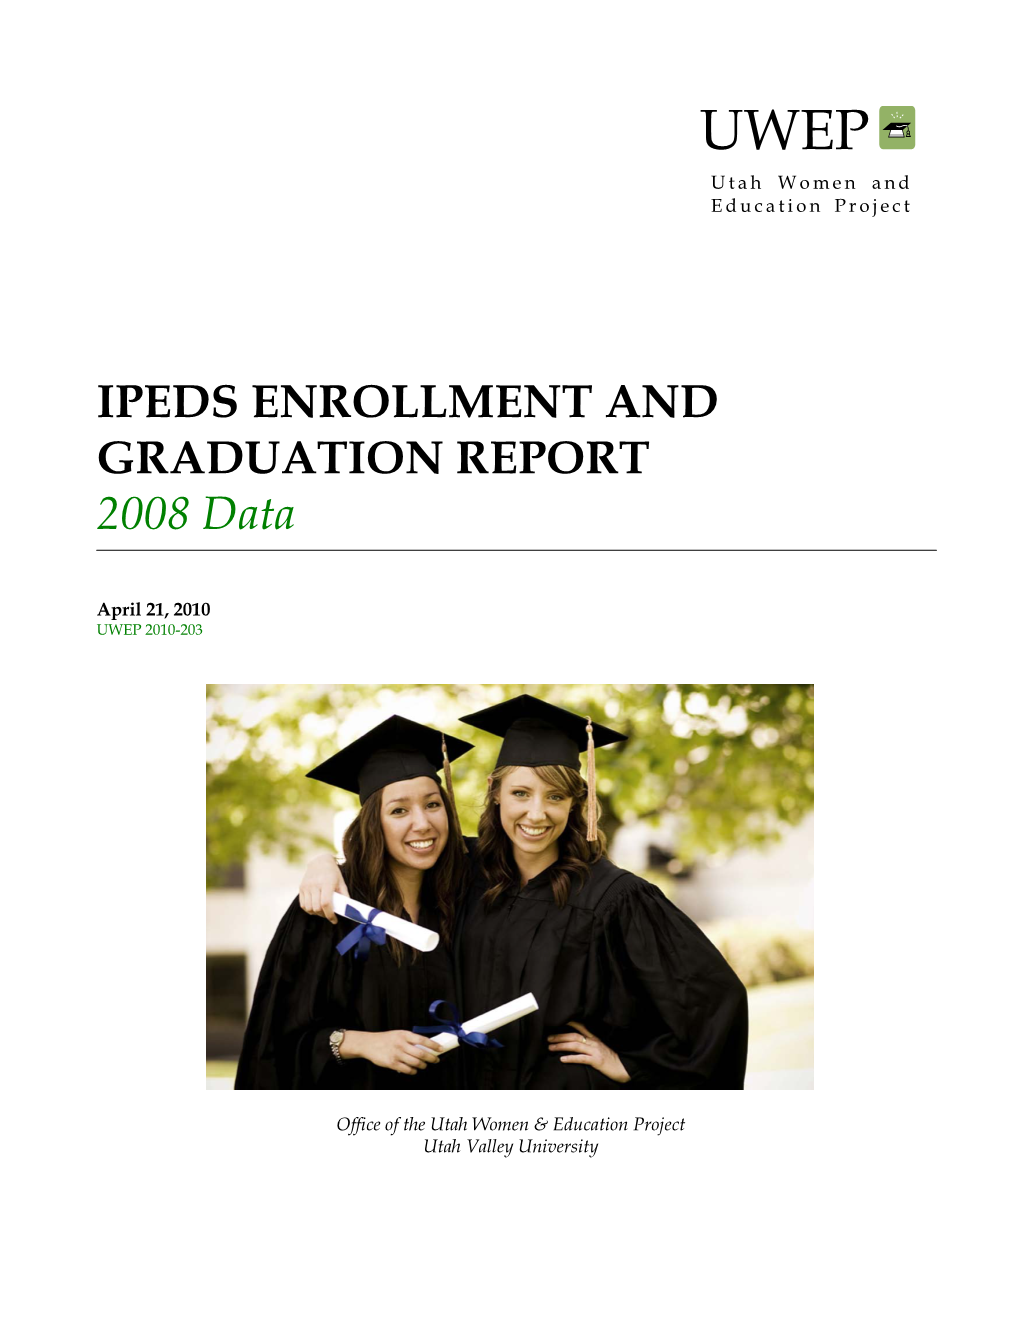 IPEDS Enrollment and Graduation, 2008 Data